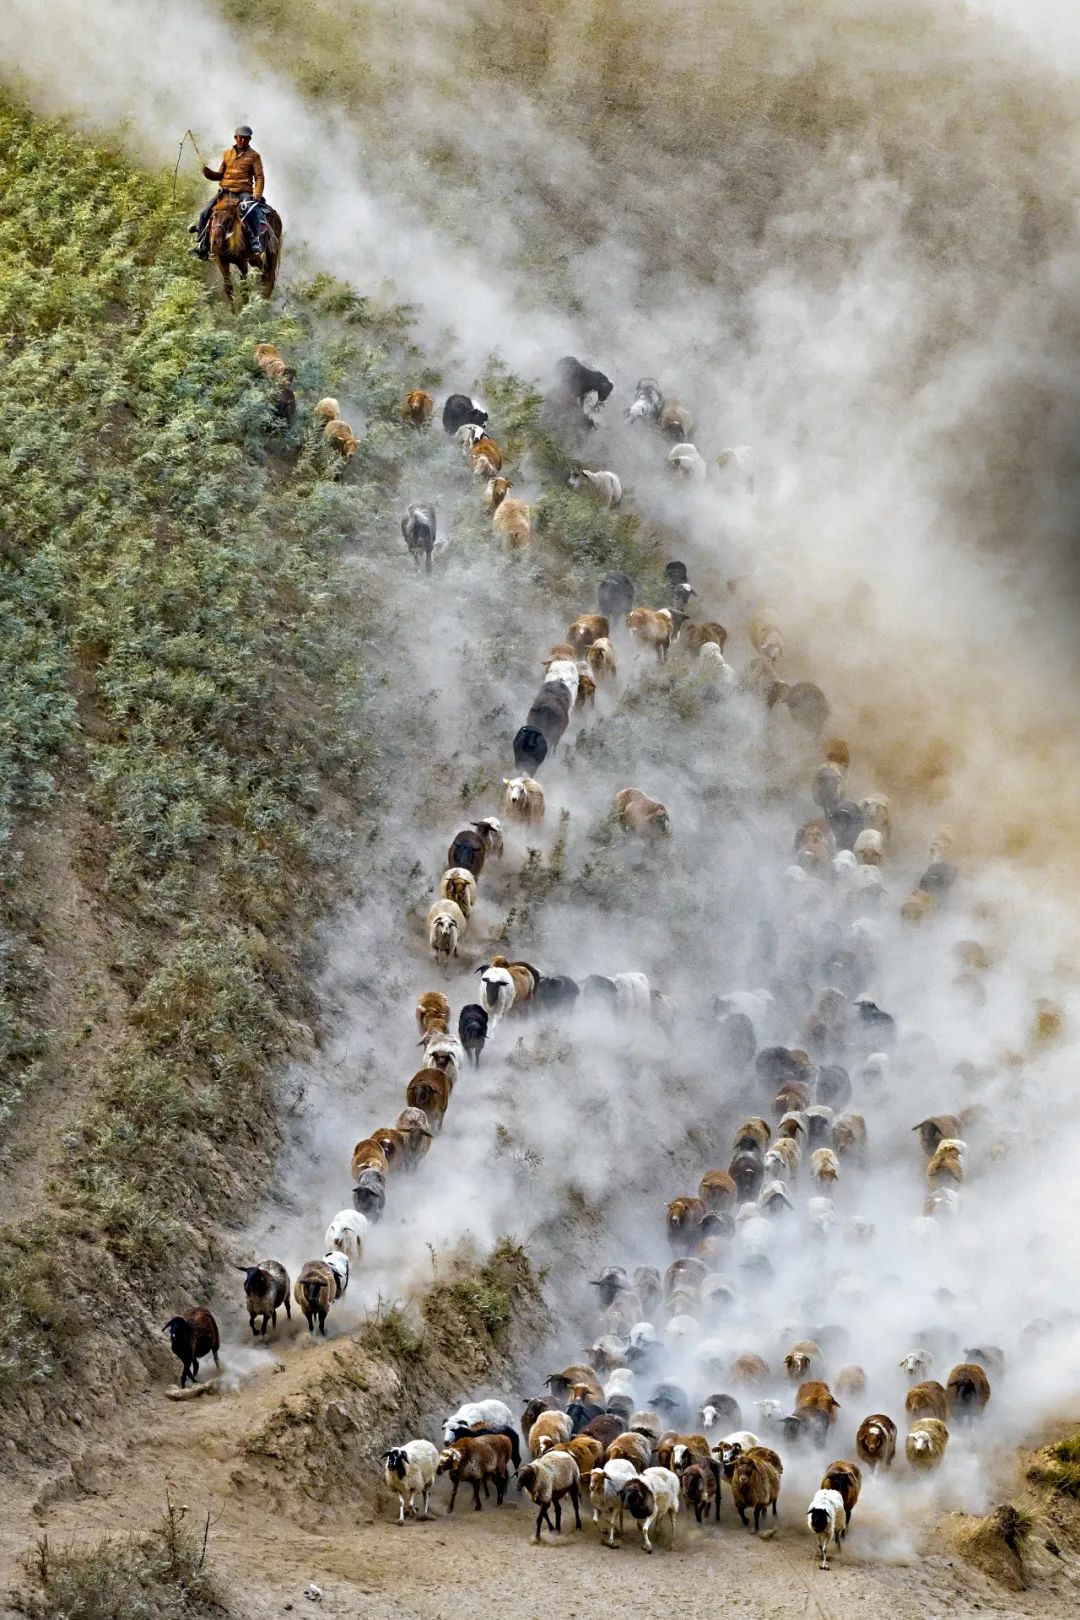  “腾云驾雾”的羊群，奔跑在伊犁山谷之间。摄影/赖宇宁